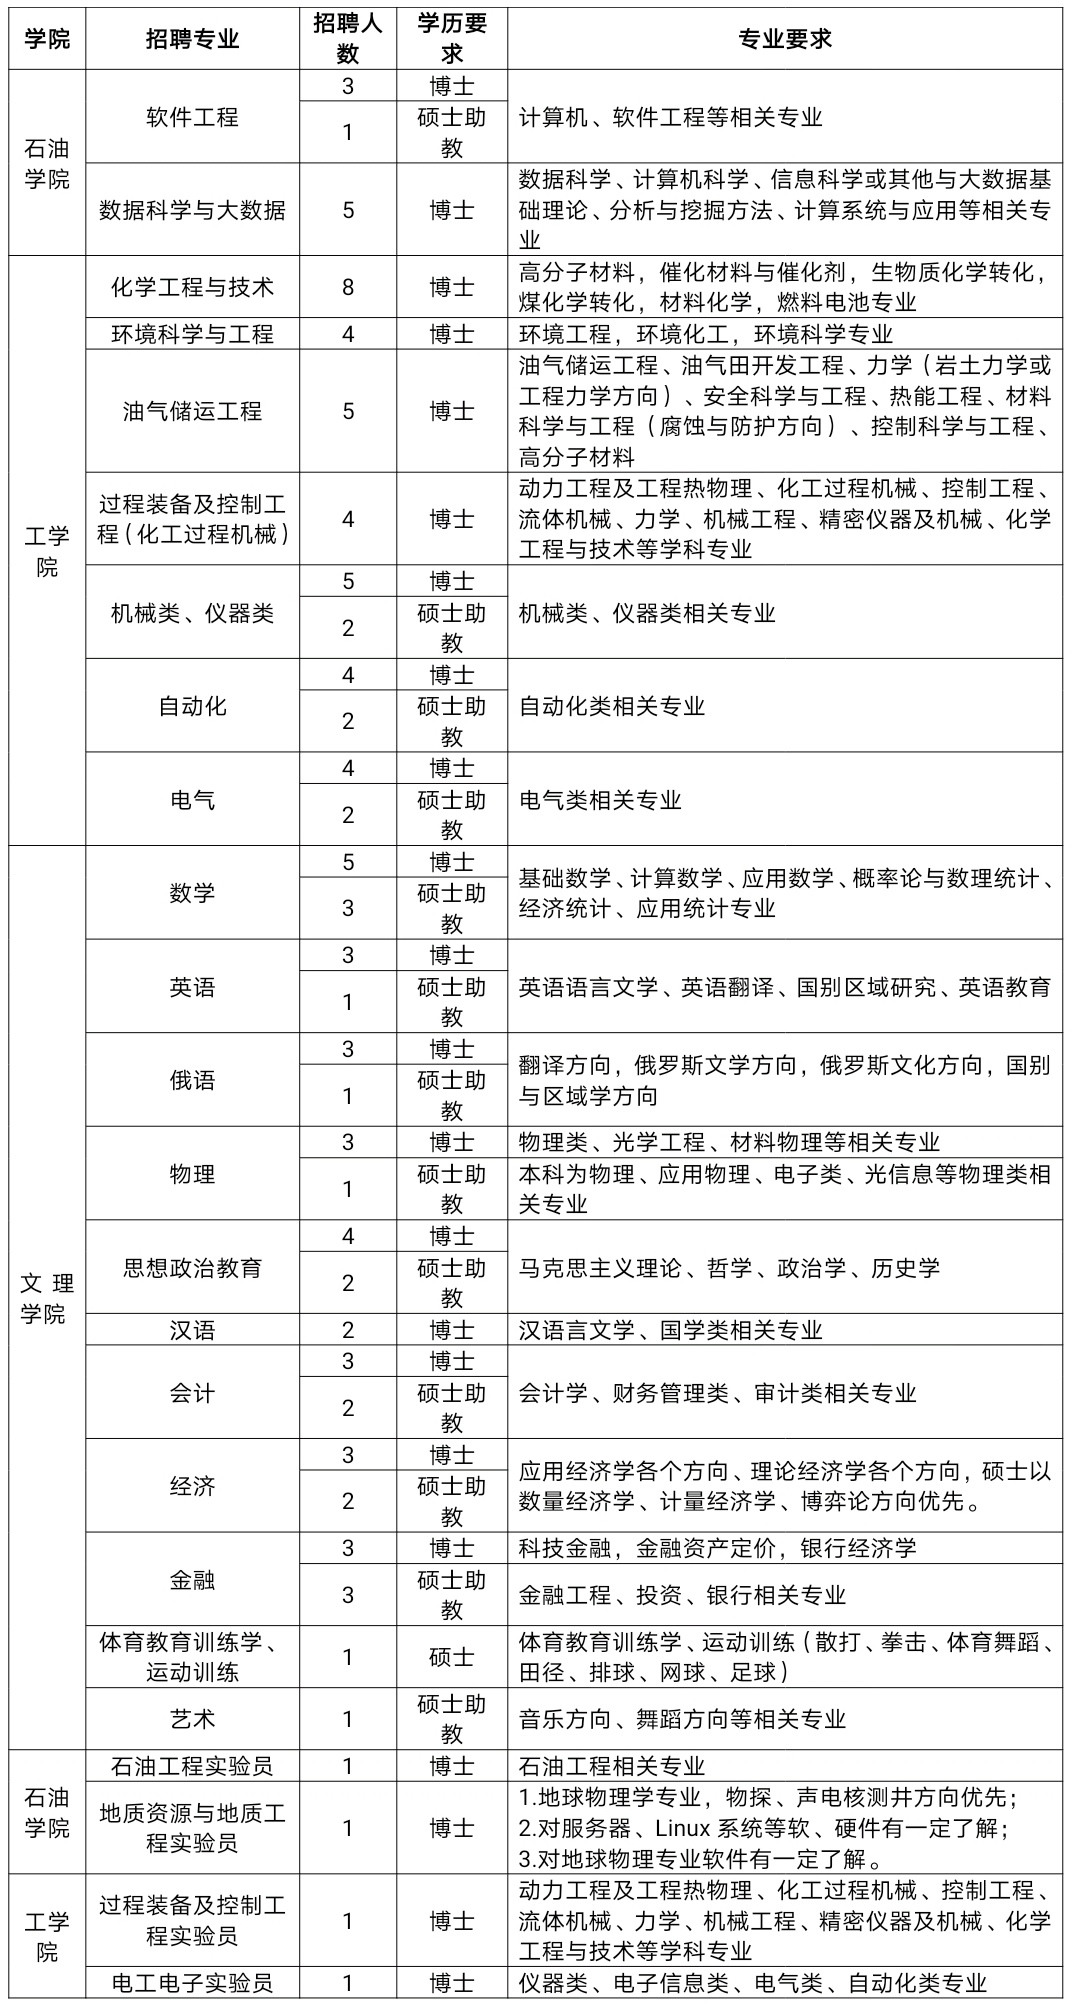 中国石油大学北京克拉玛依校区2021年度专任教师招聘